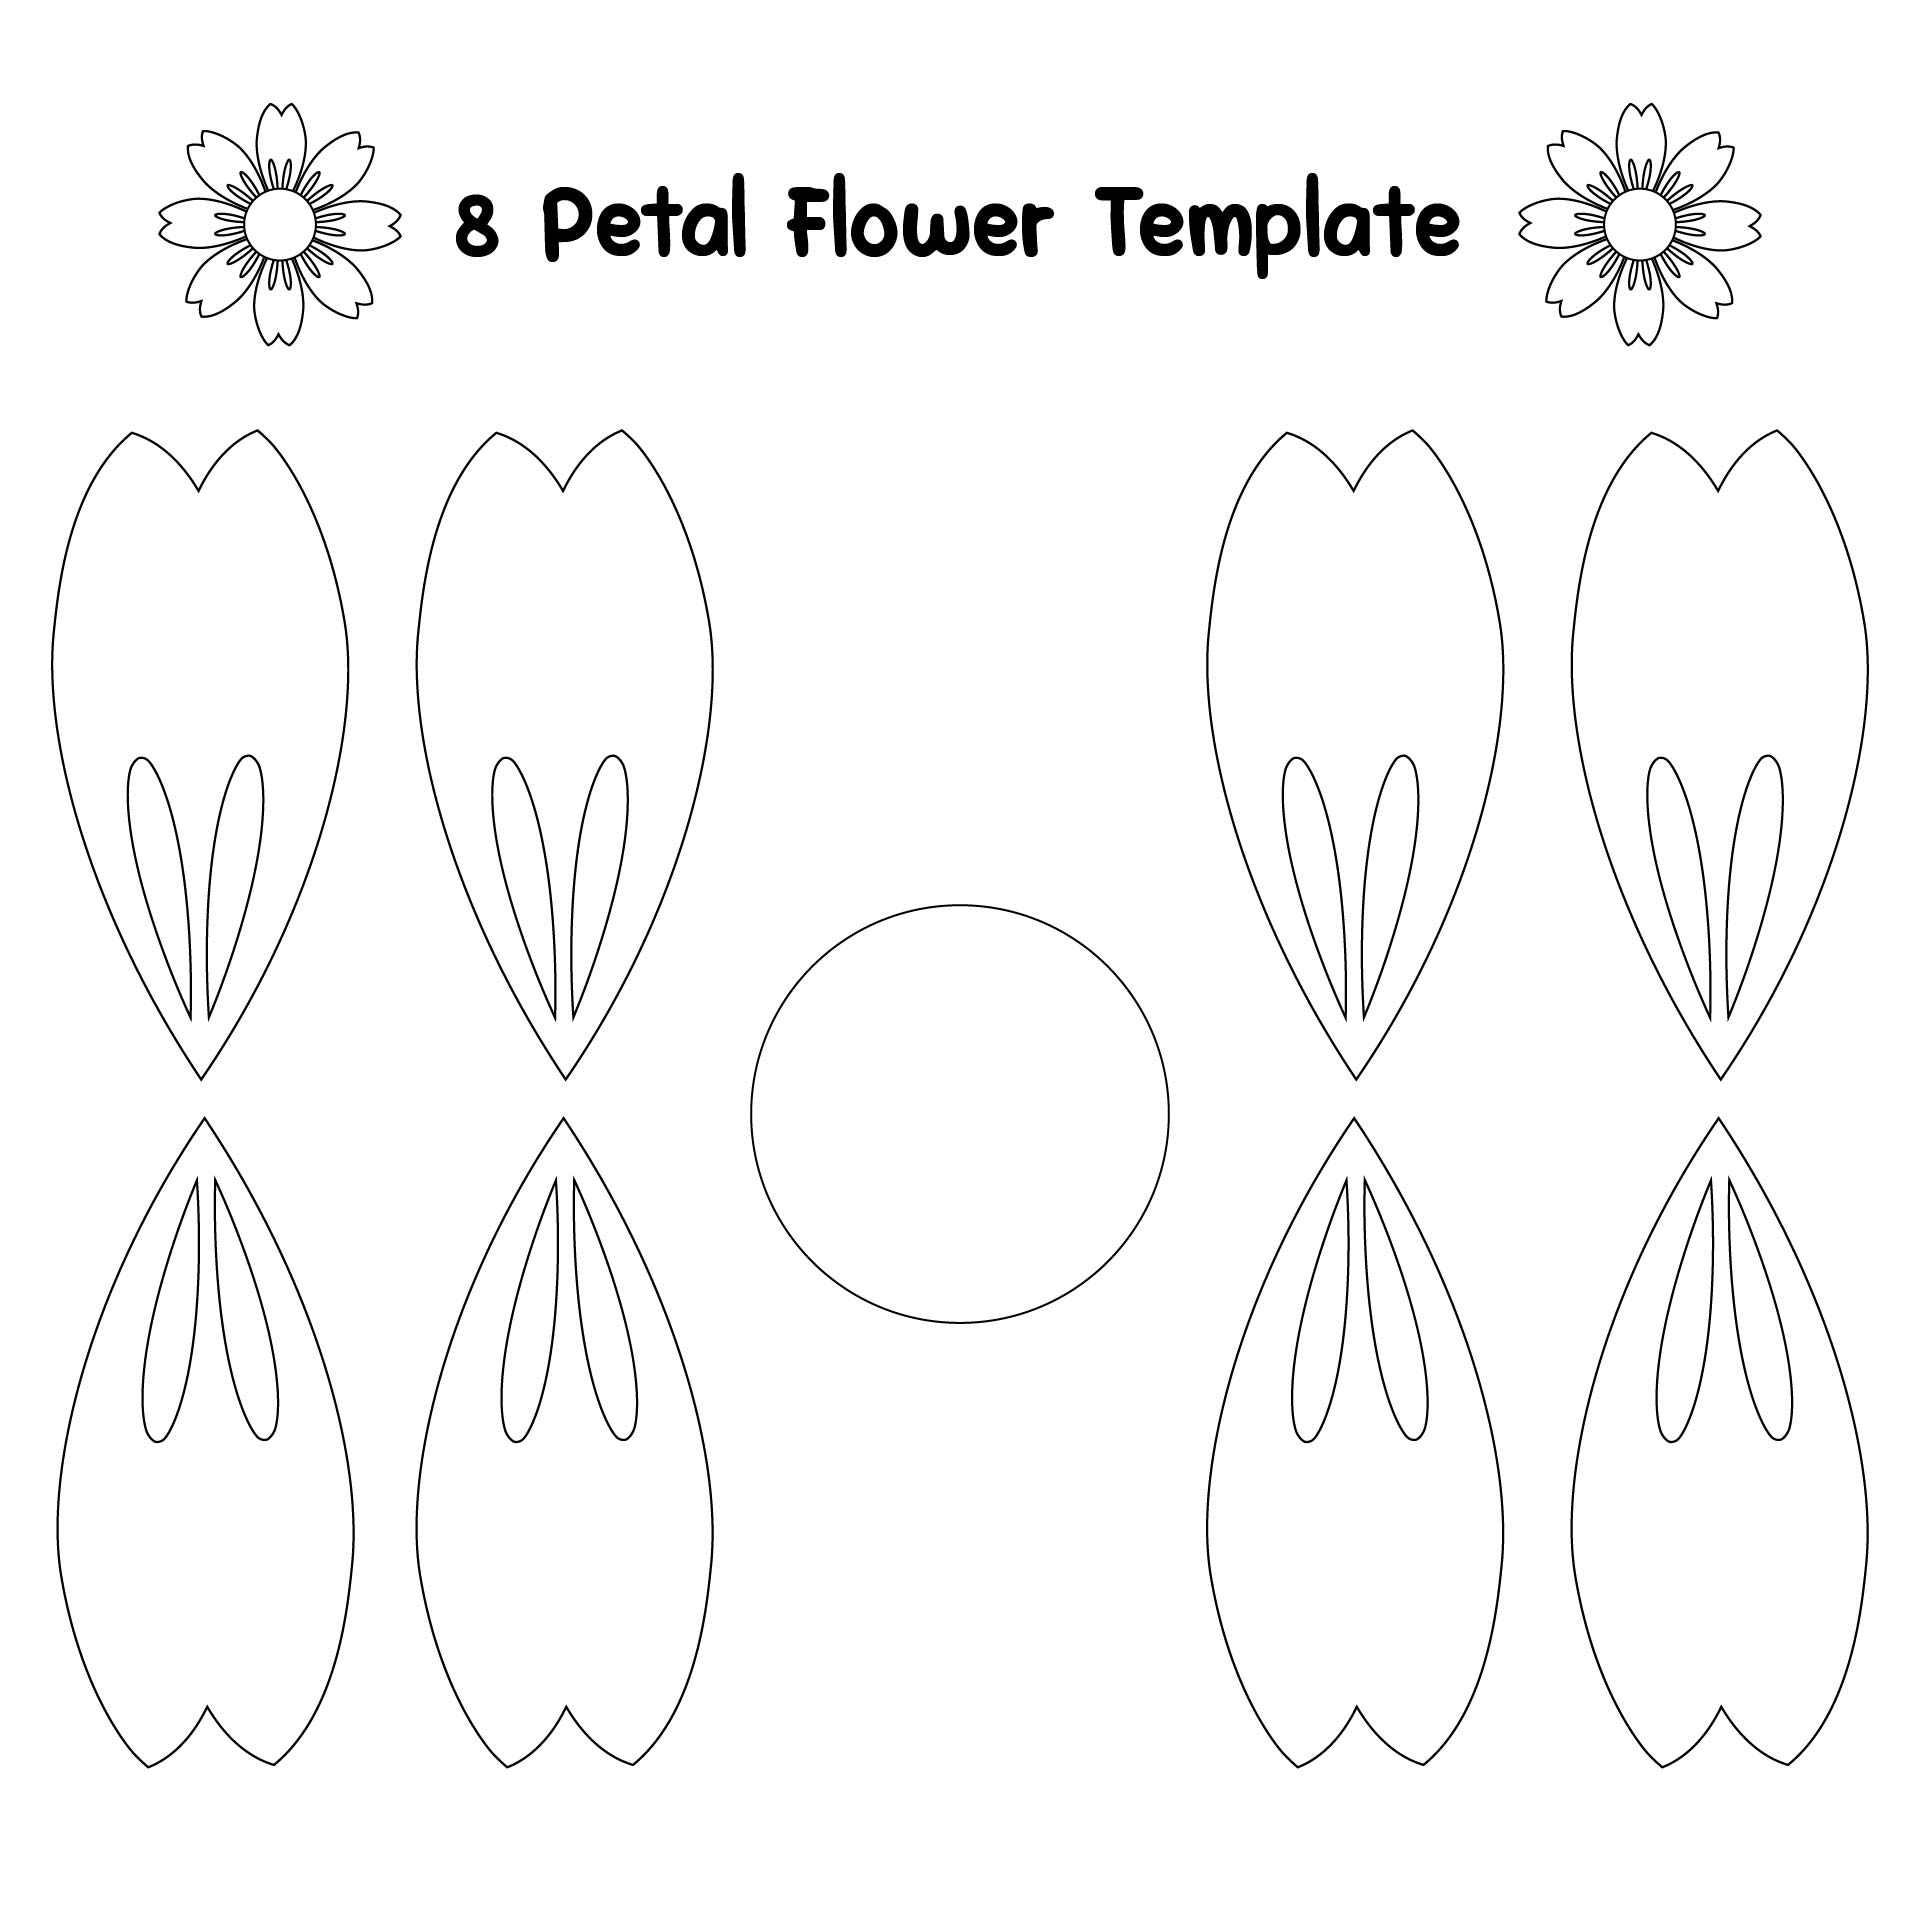 8 Petal Flower Template